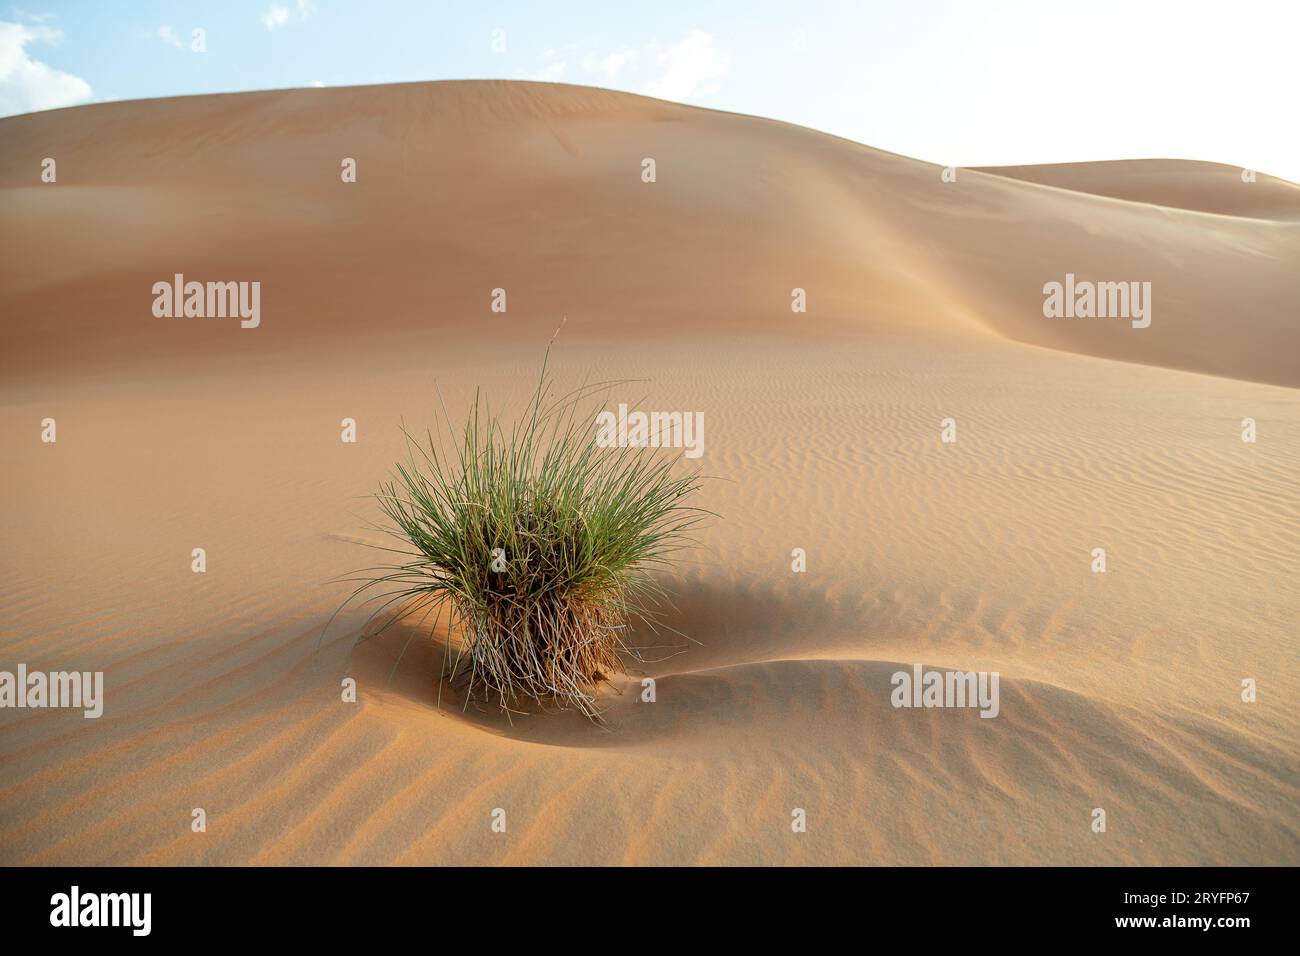 Arbusti desertici tra dune di sabbia a Liwa Abu Dhabi, negli Emirati Arabi Uniti. Splendida scena paesaggistica. Foto di alta qualità. Foto Stock